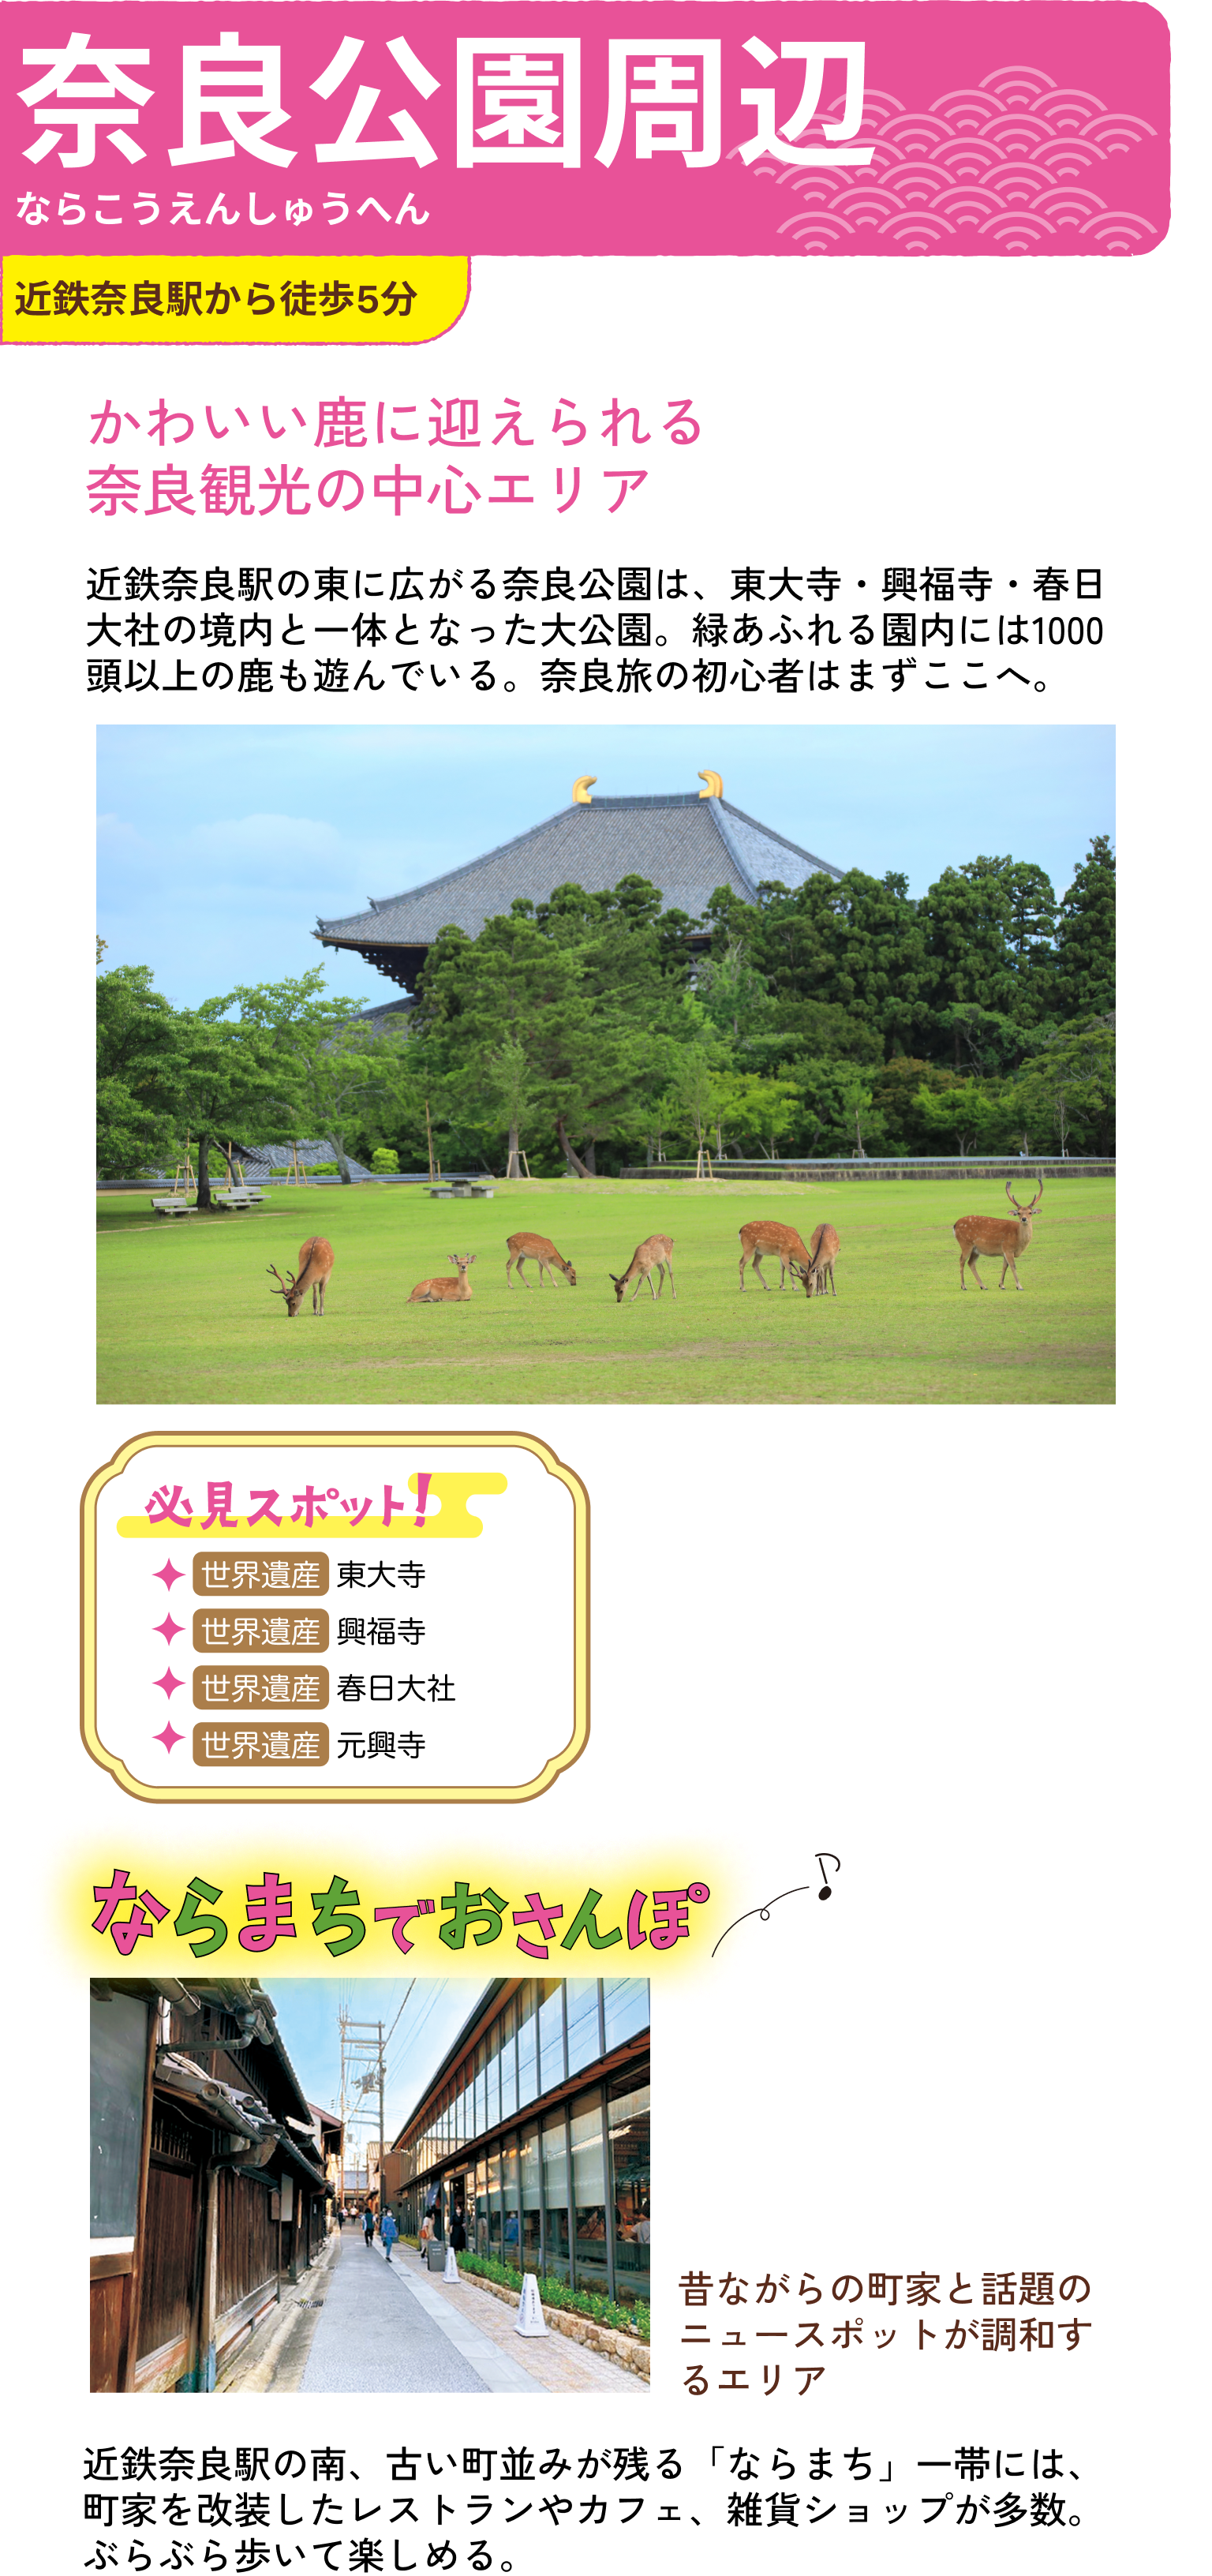 奈良公園周辺のおすすめスポット紹介